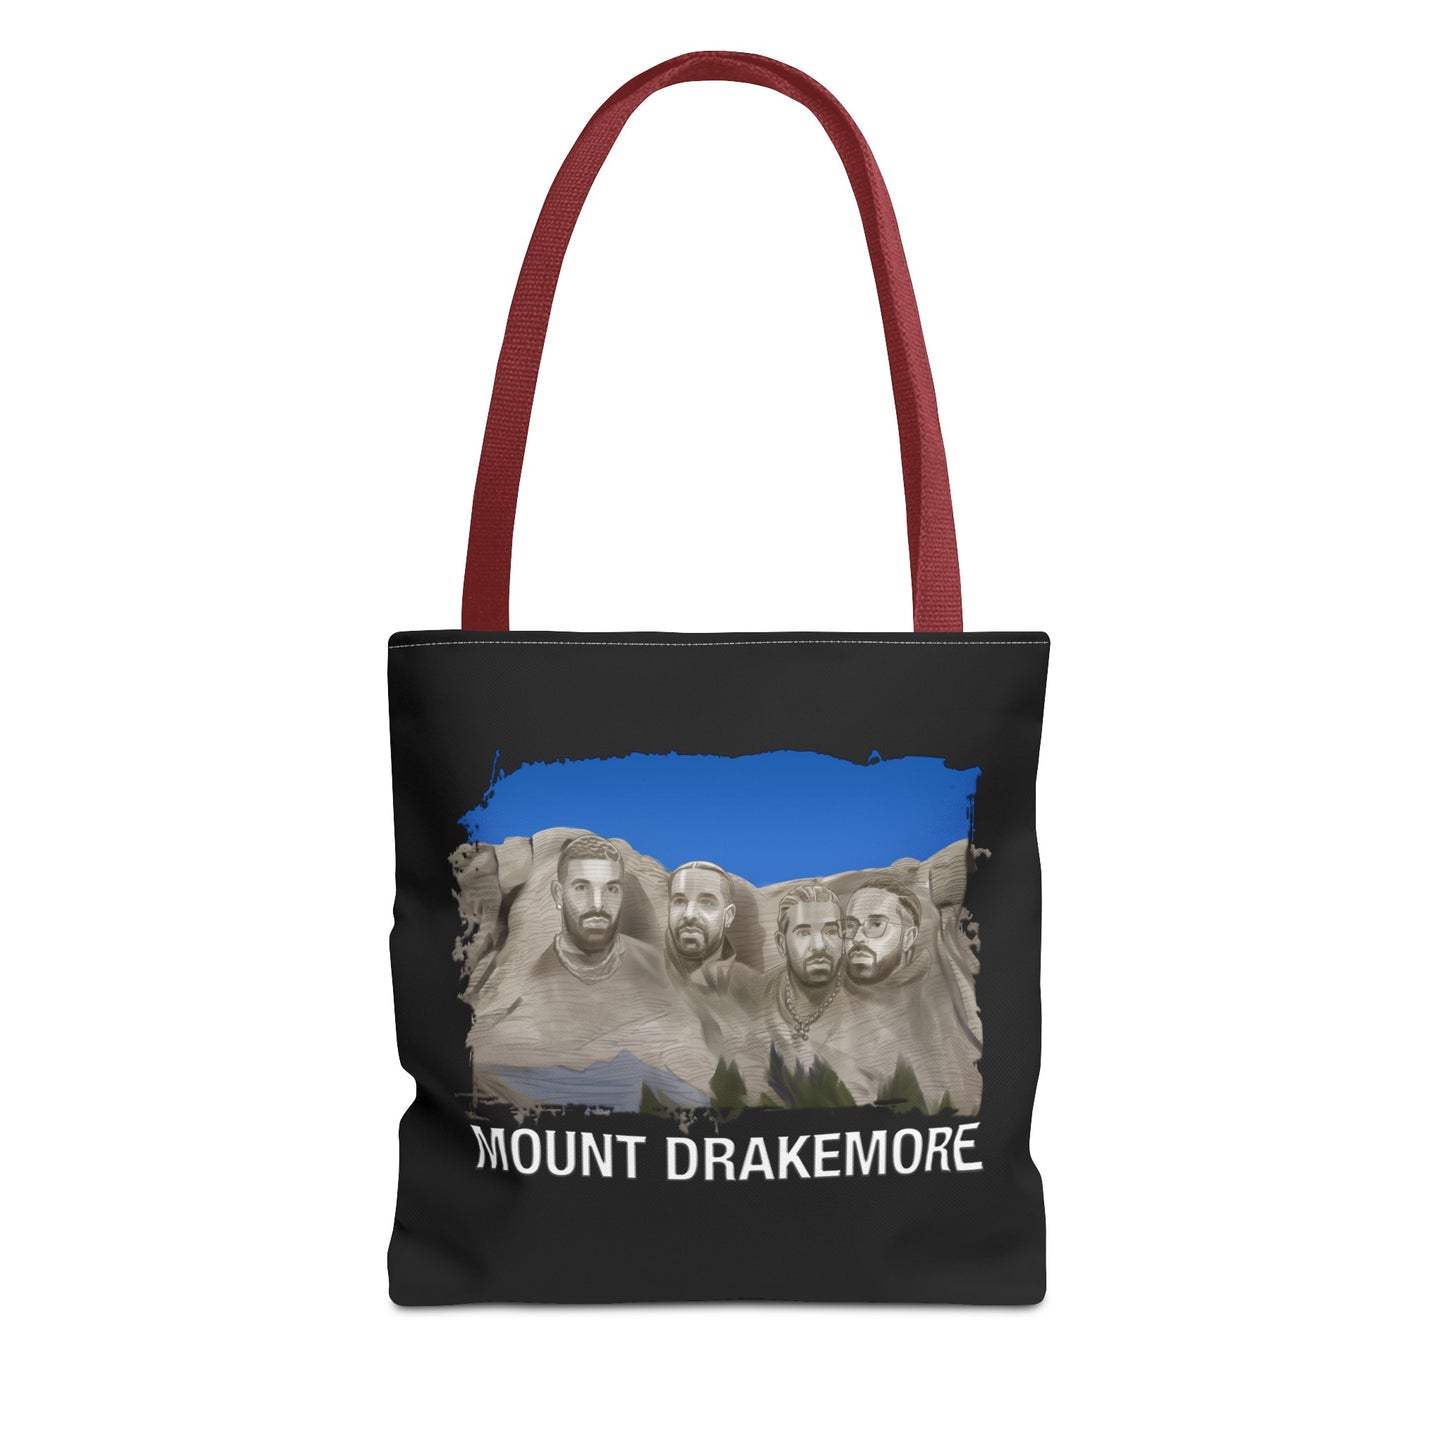 Mount Drakemore Tote Bag